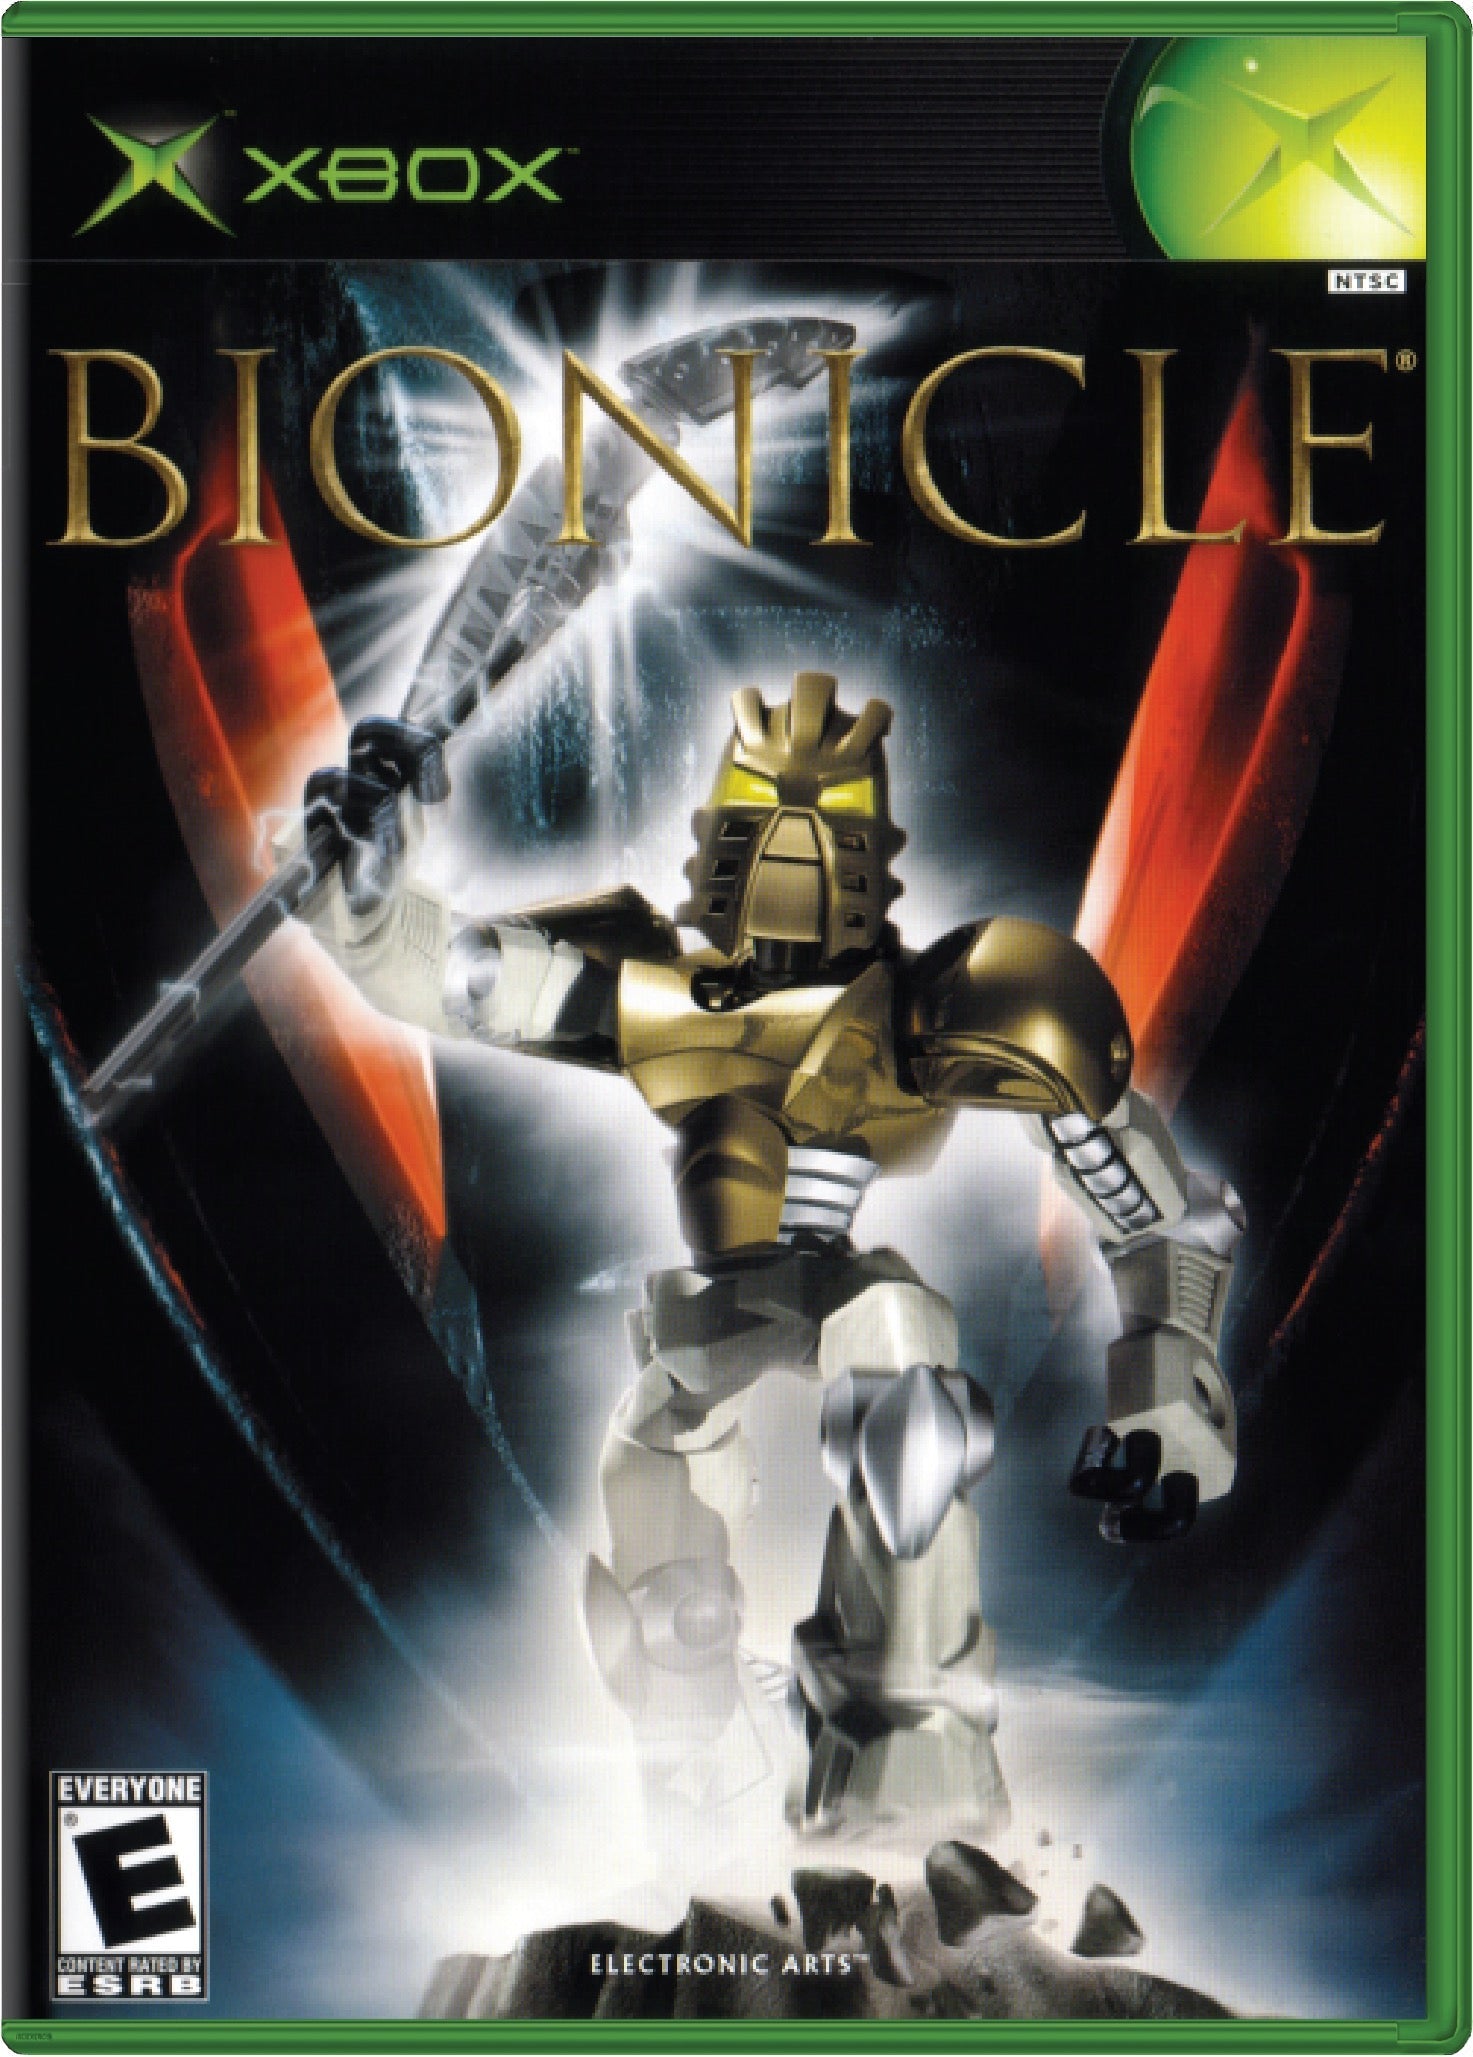 Bionicle Cover Art